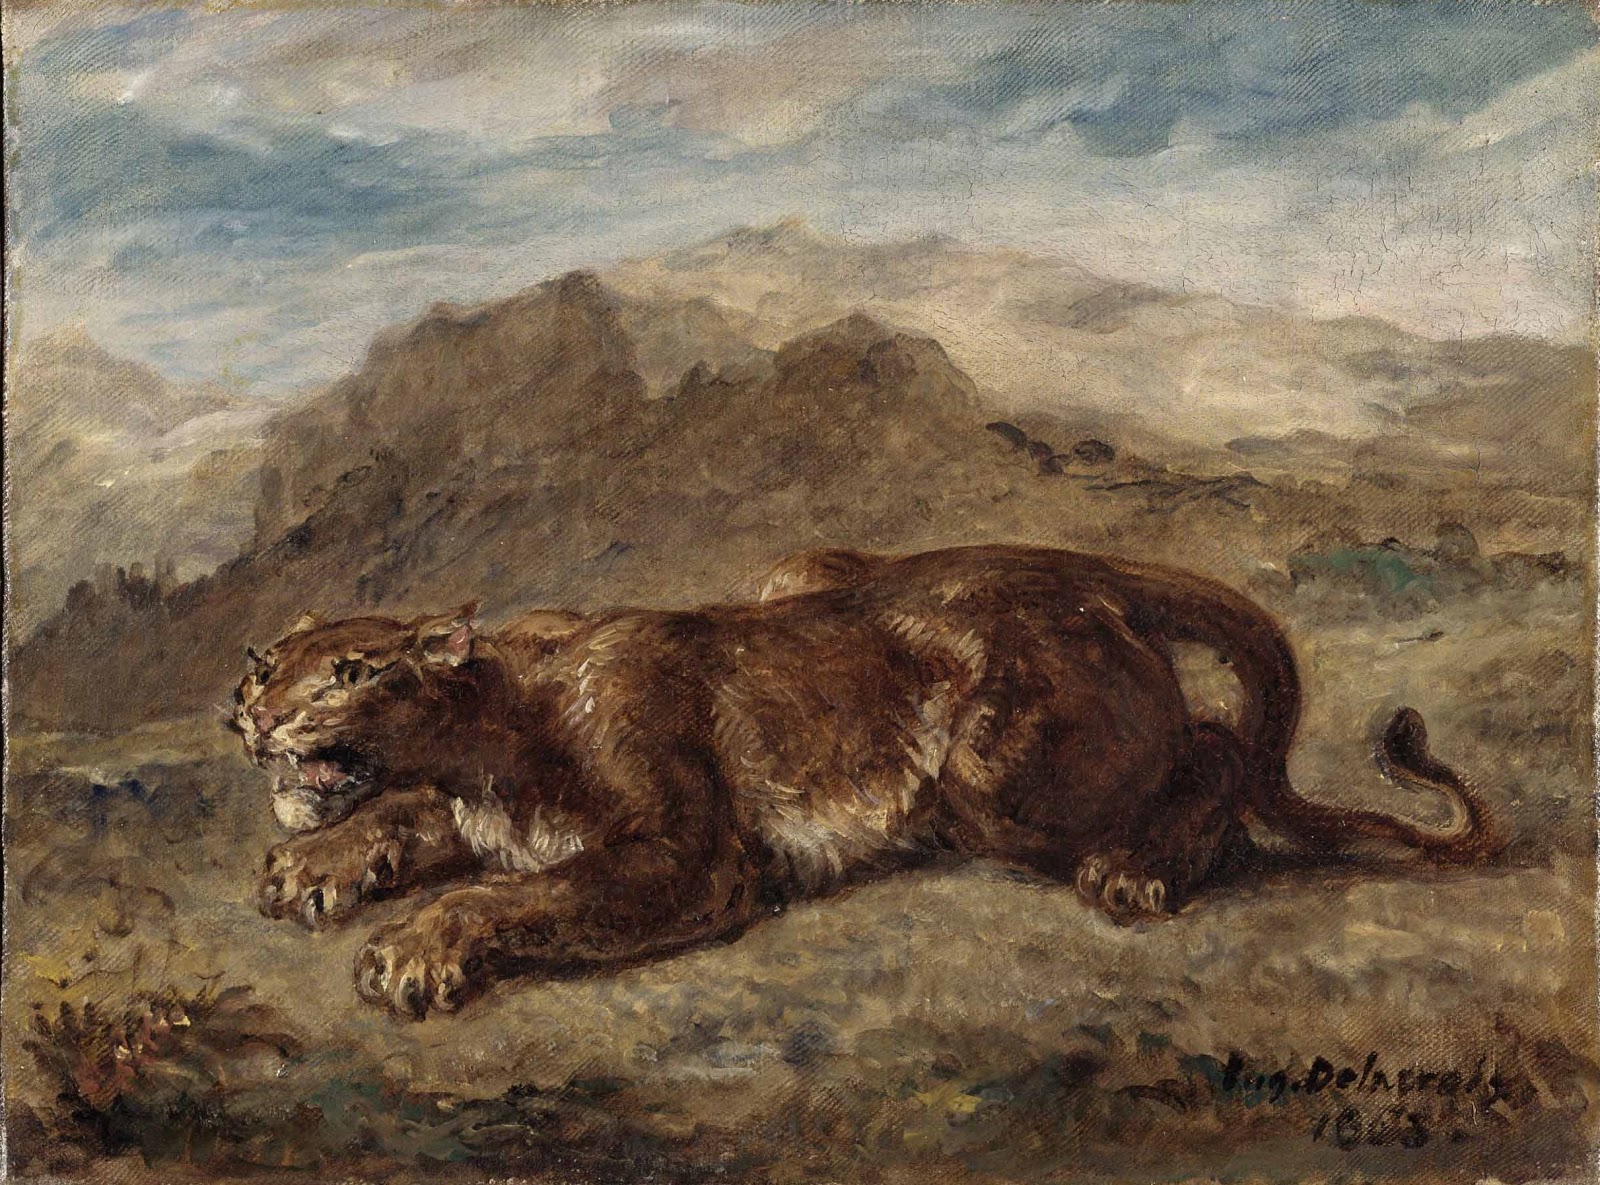 Eugene+Delacroix-1798-1863 (278).jpg